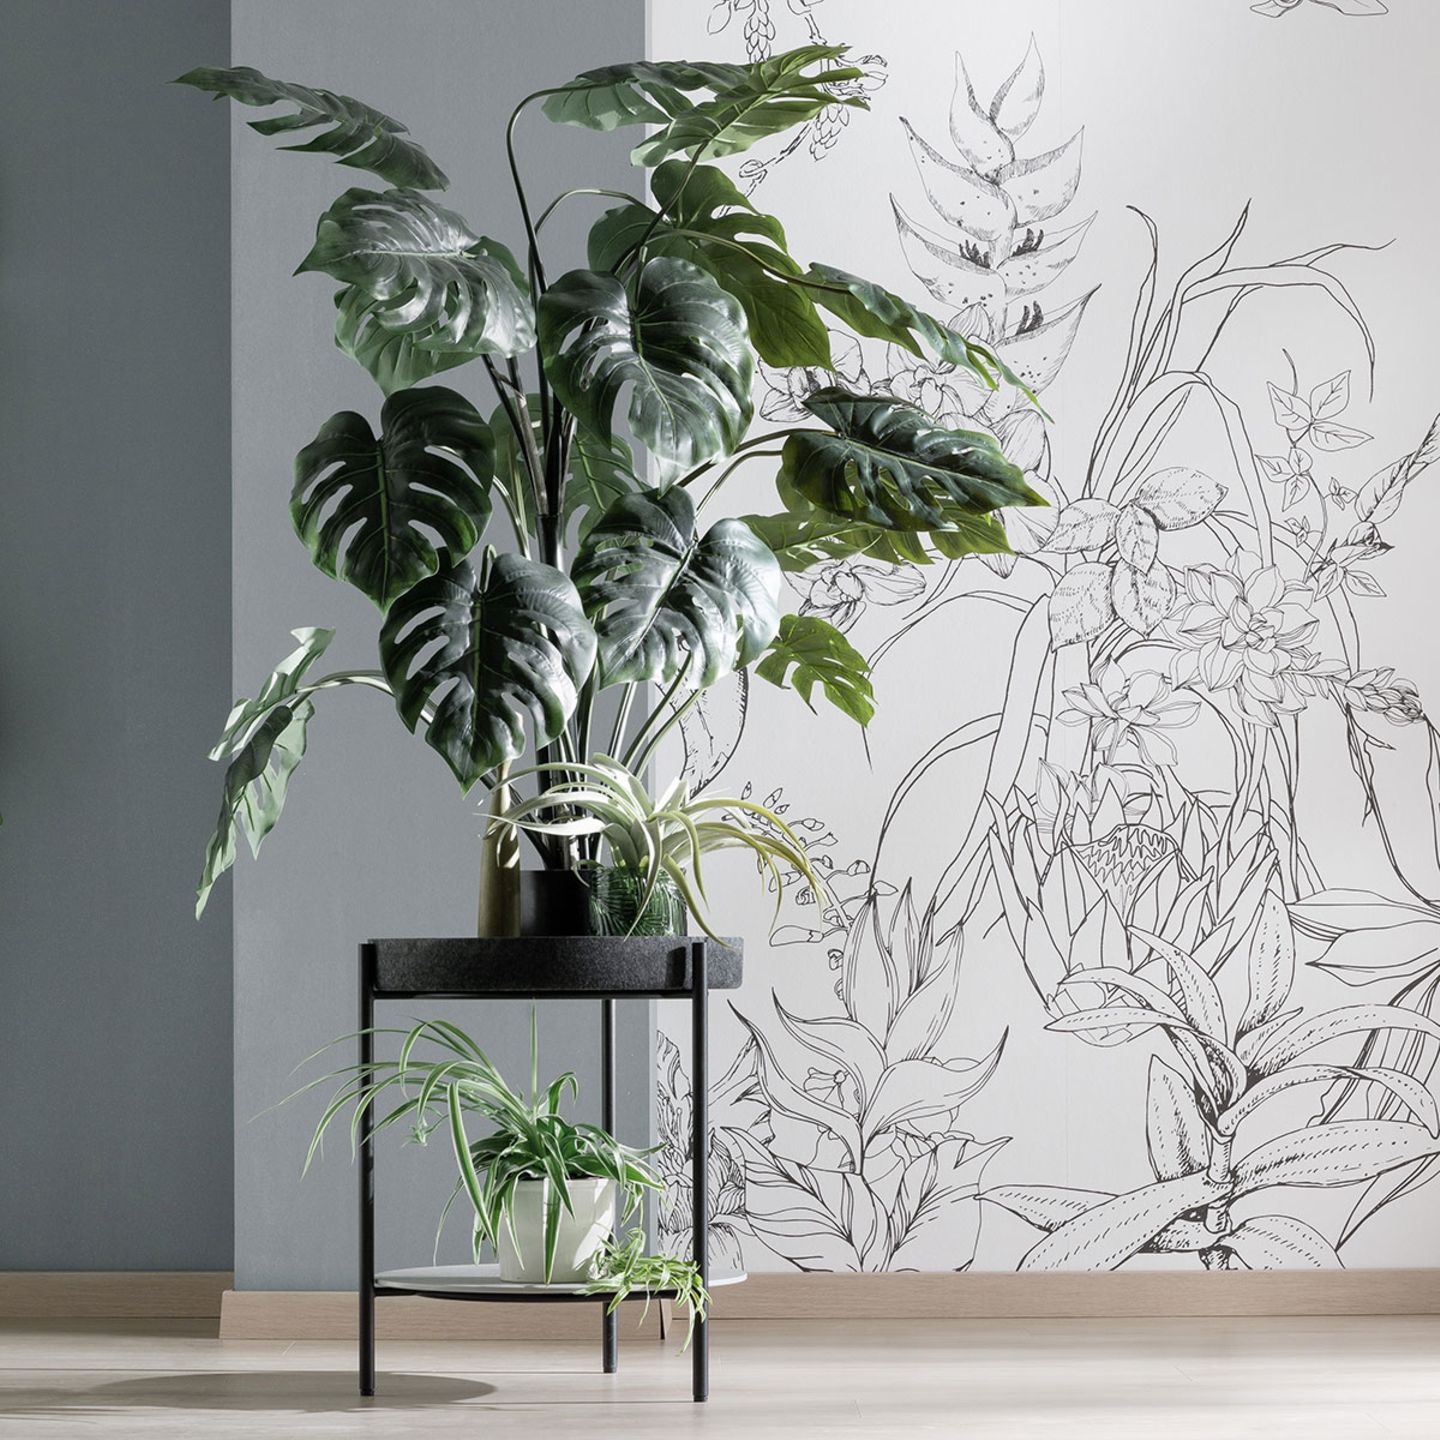 Beistelltisch "Twist" von der SCHÖNER WOHNEN-Kollektion mit einer großen Zimmerpflanze vor einer tapezierten Wand